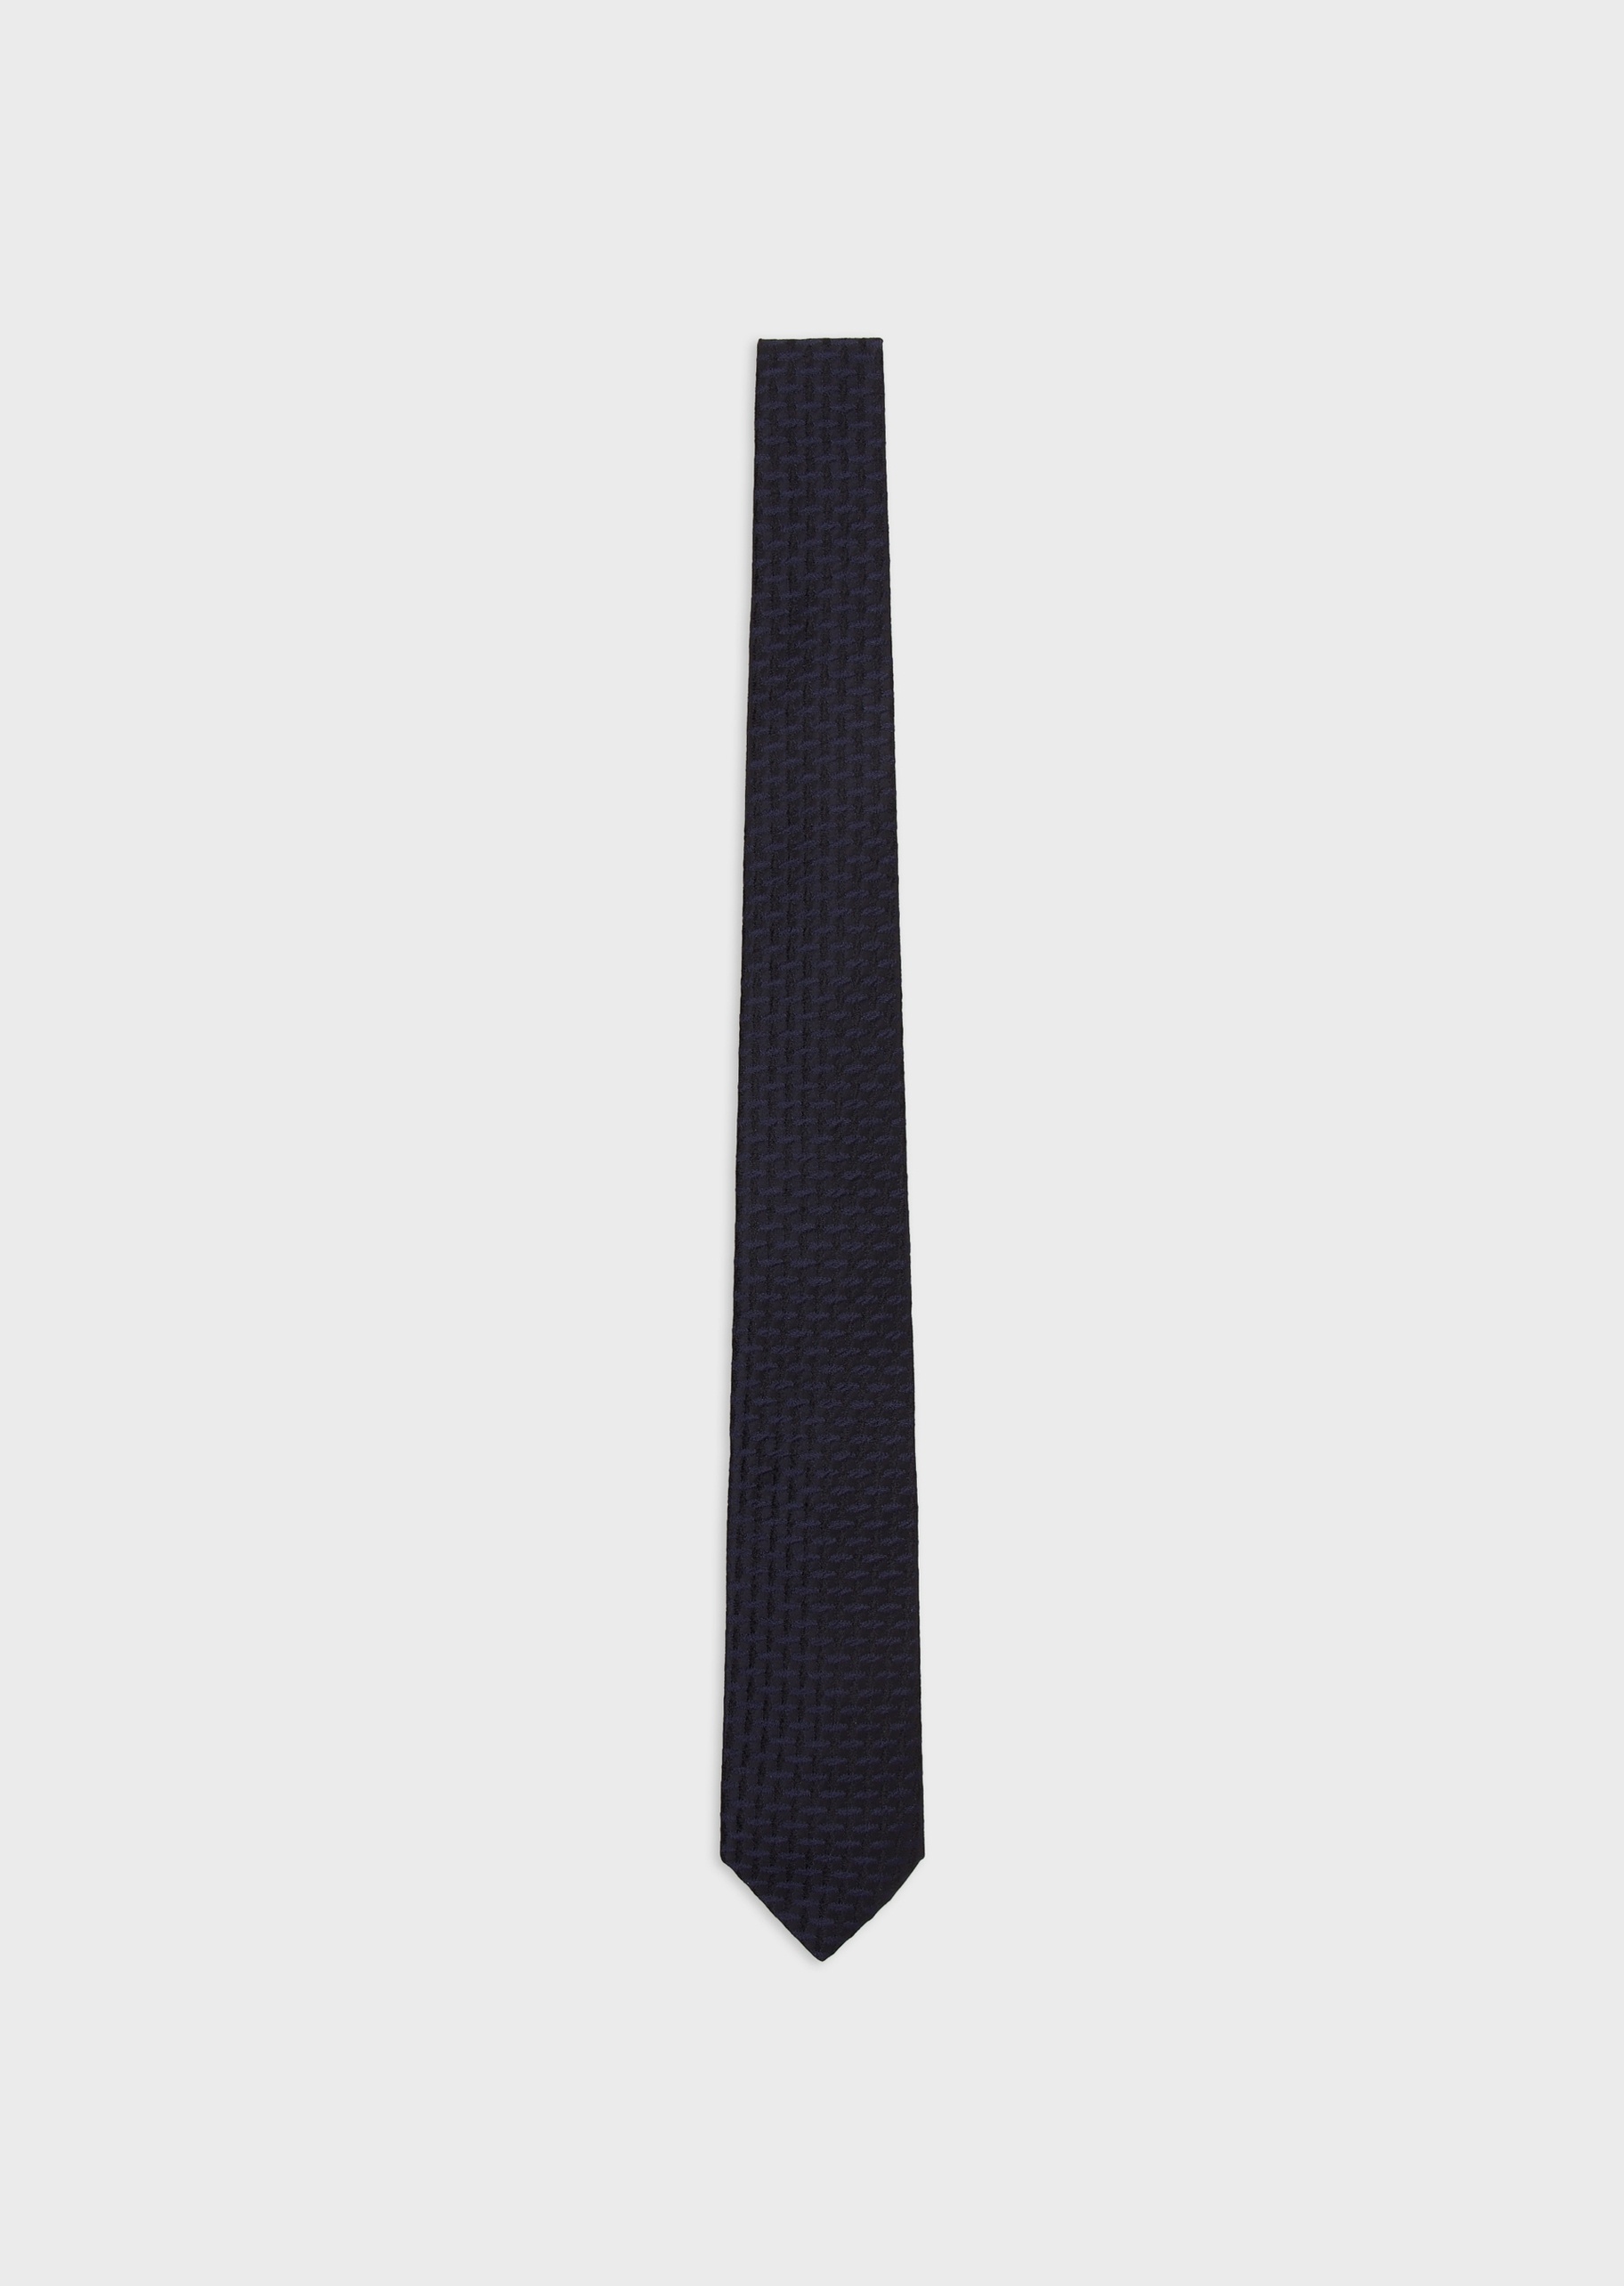 Giorgio Armani 男士桑蚕丝箭头型几何编织提花领带